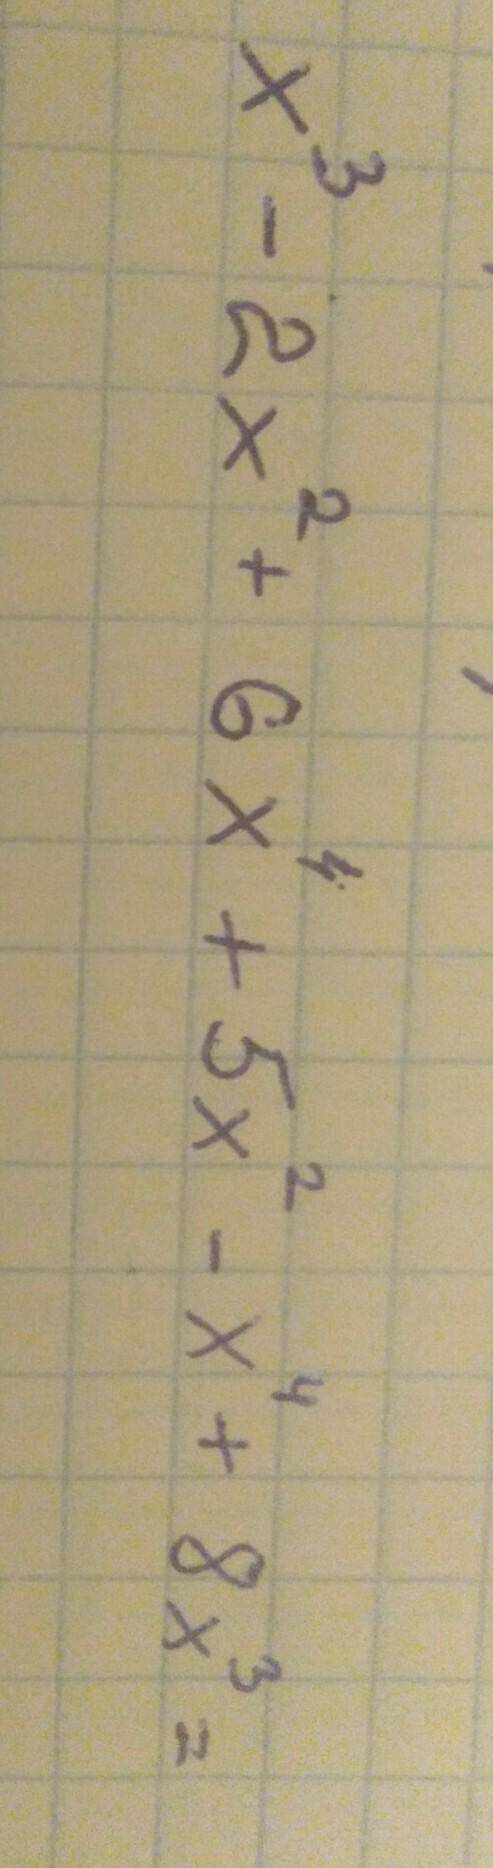 в 3 степени минус 2 икс во 2 степени плюс 6 Икс 4 степени плюс 5 Икс во второй степени минус икс в ч